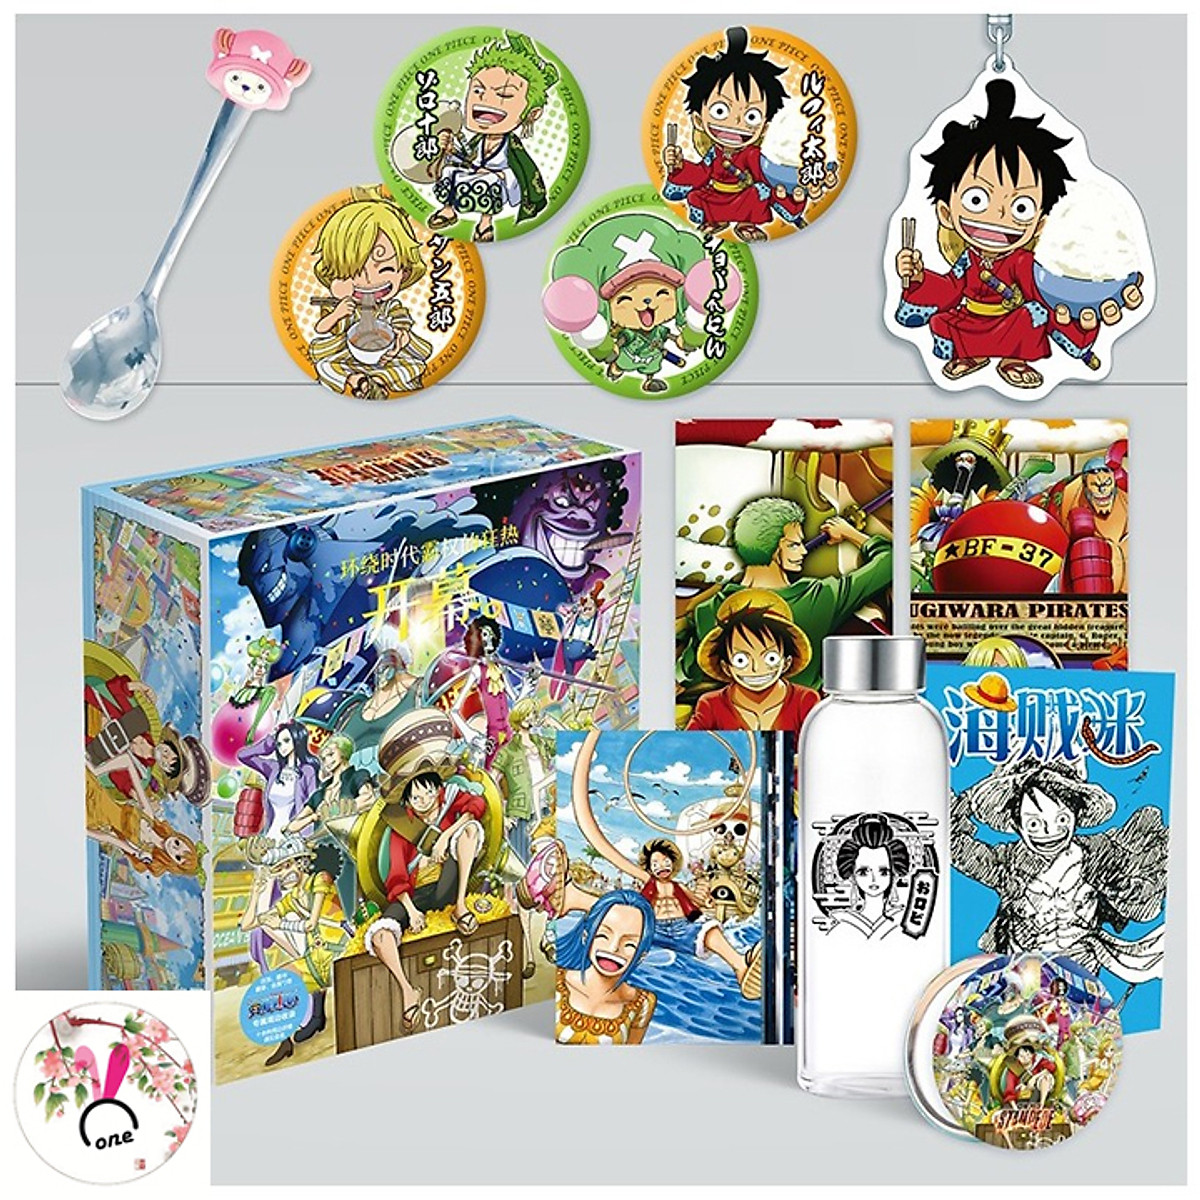 Hộp quà One Piece là một món quà thú vị dành riêng cho những fan hâm mộ của series manga này. Được thiết kế độc đáo và đầy sáng tạo, hộp quà sẽ mang đến cho bạn nhiều sản phẩm chất lượng từ One Piece như áo thun, bóp ví, sticker và nhiều hơn thế nữa. Hãy đặt mua ngay để sở hữu một bộ sưu tập One Piece đầy đủ và ấn tượng.